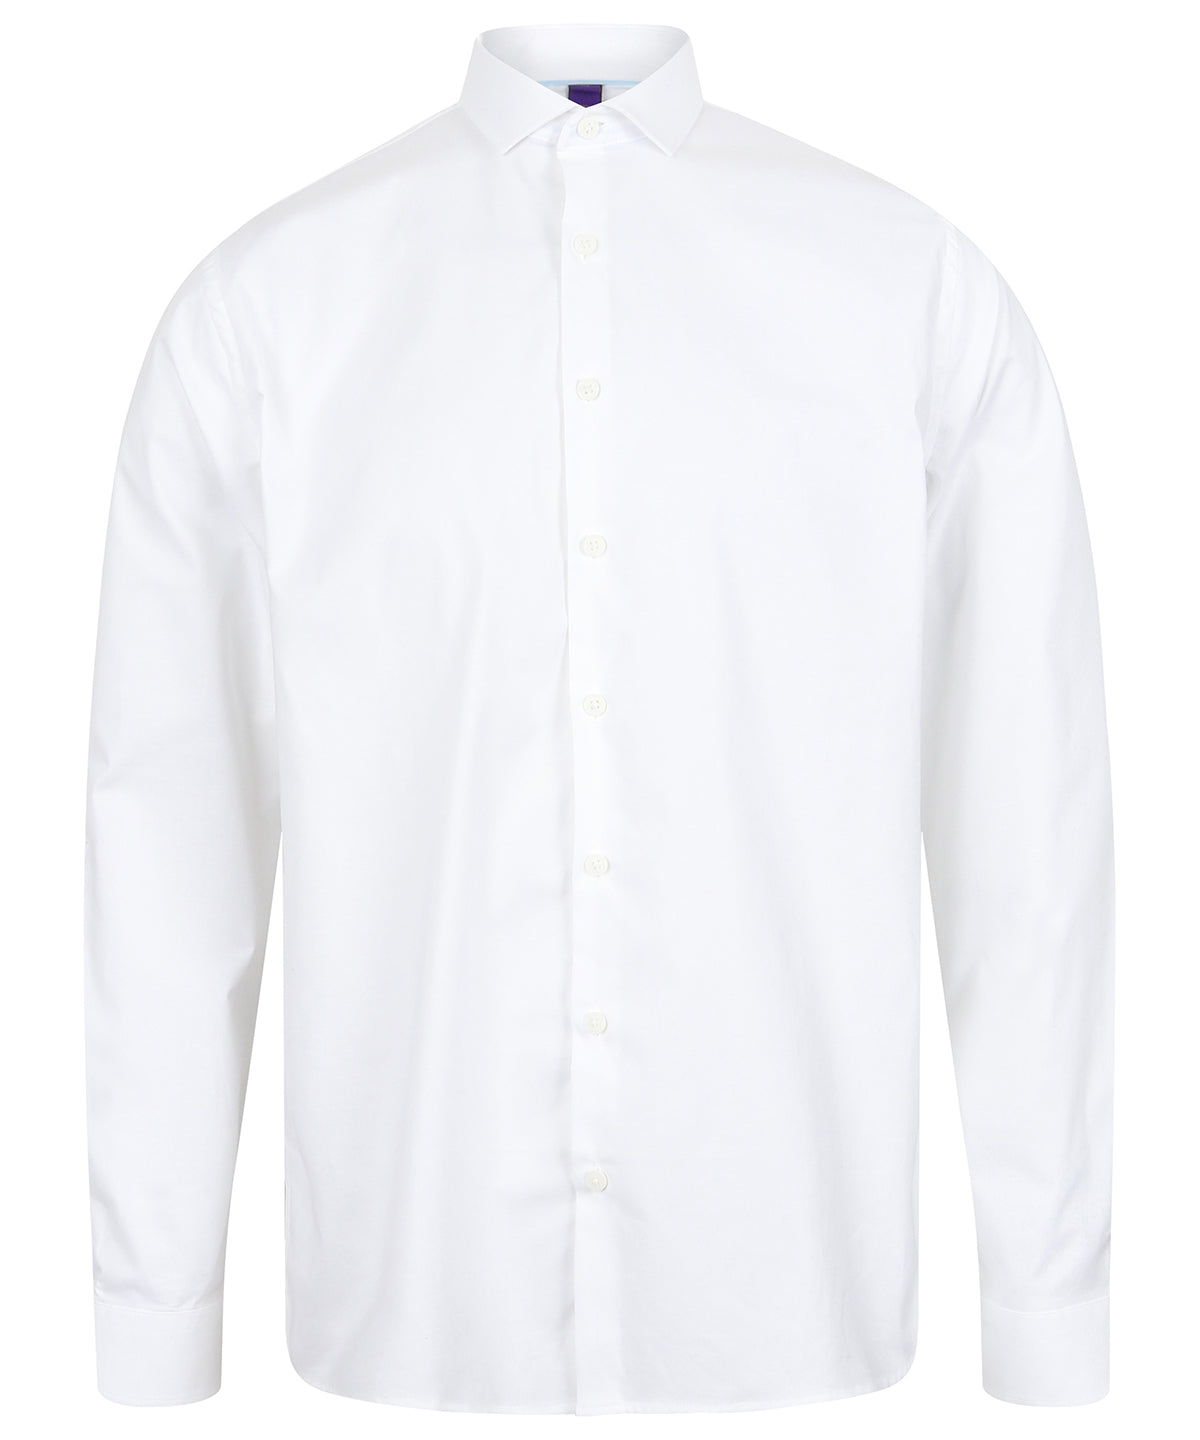 Personalised Shirts - Black Henbury Long sleeve stretch shirt